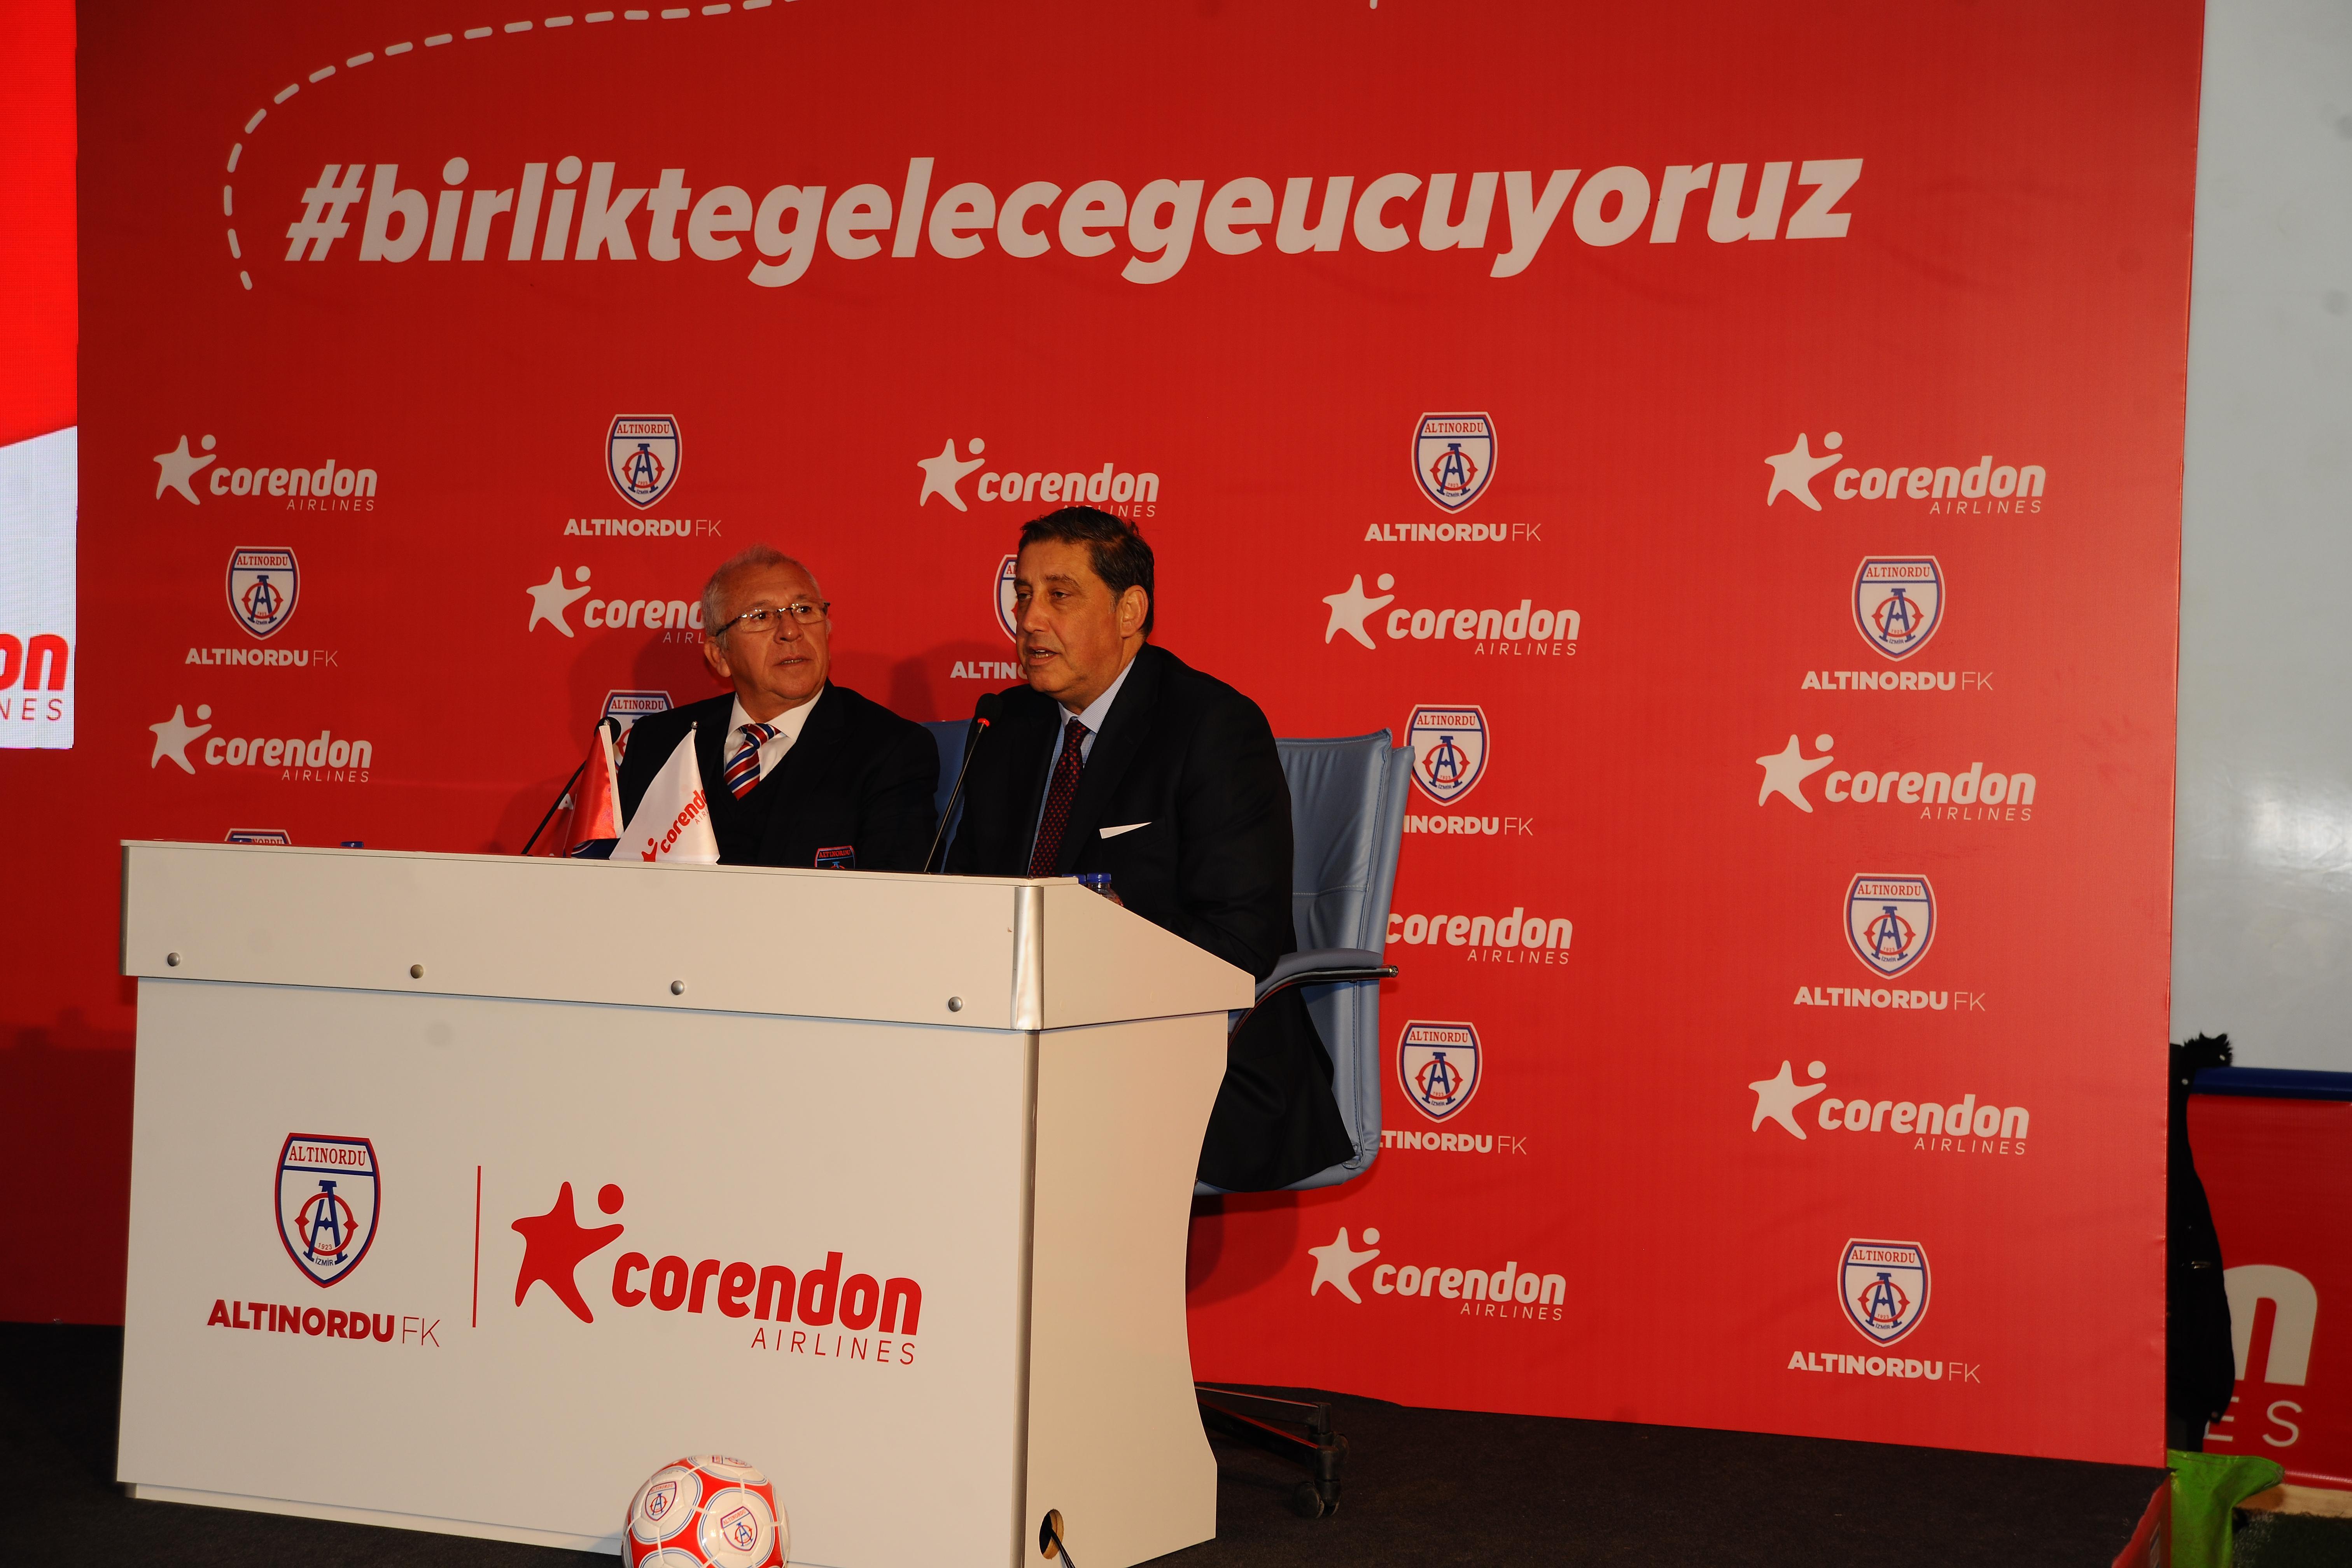 Corendon Airlines, Altınordu Futbol Kulübünün “Geleceğe Uçuş” sponsoru oldu